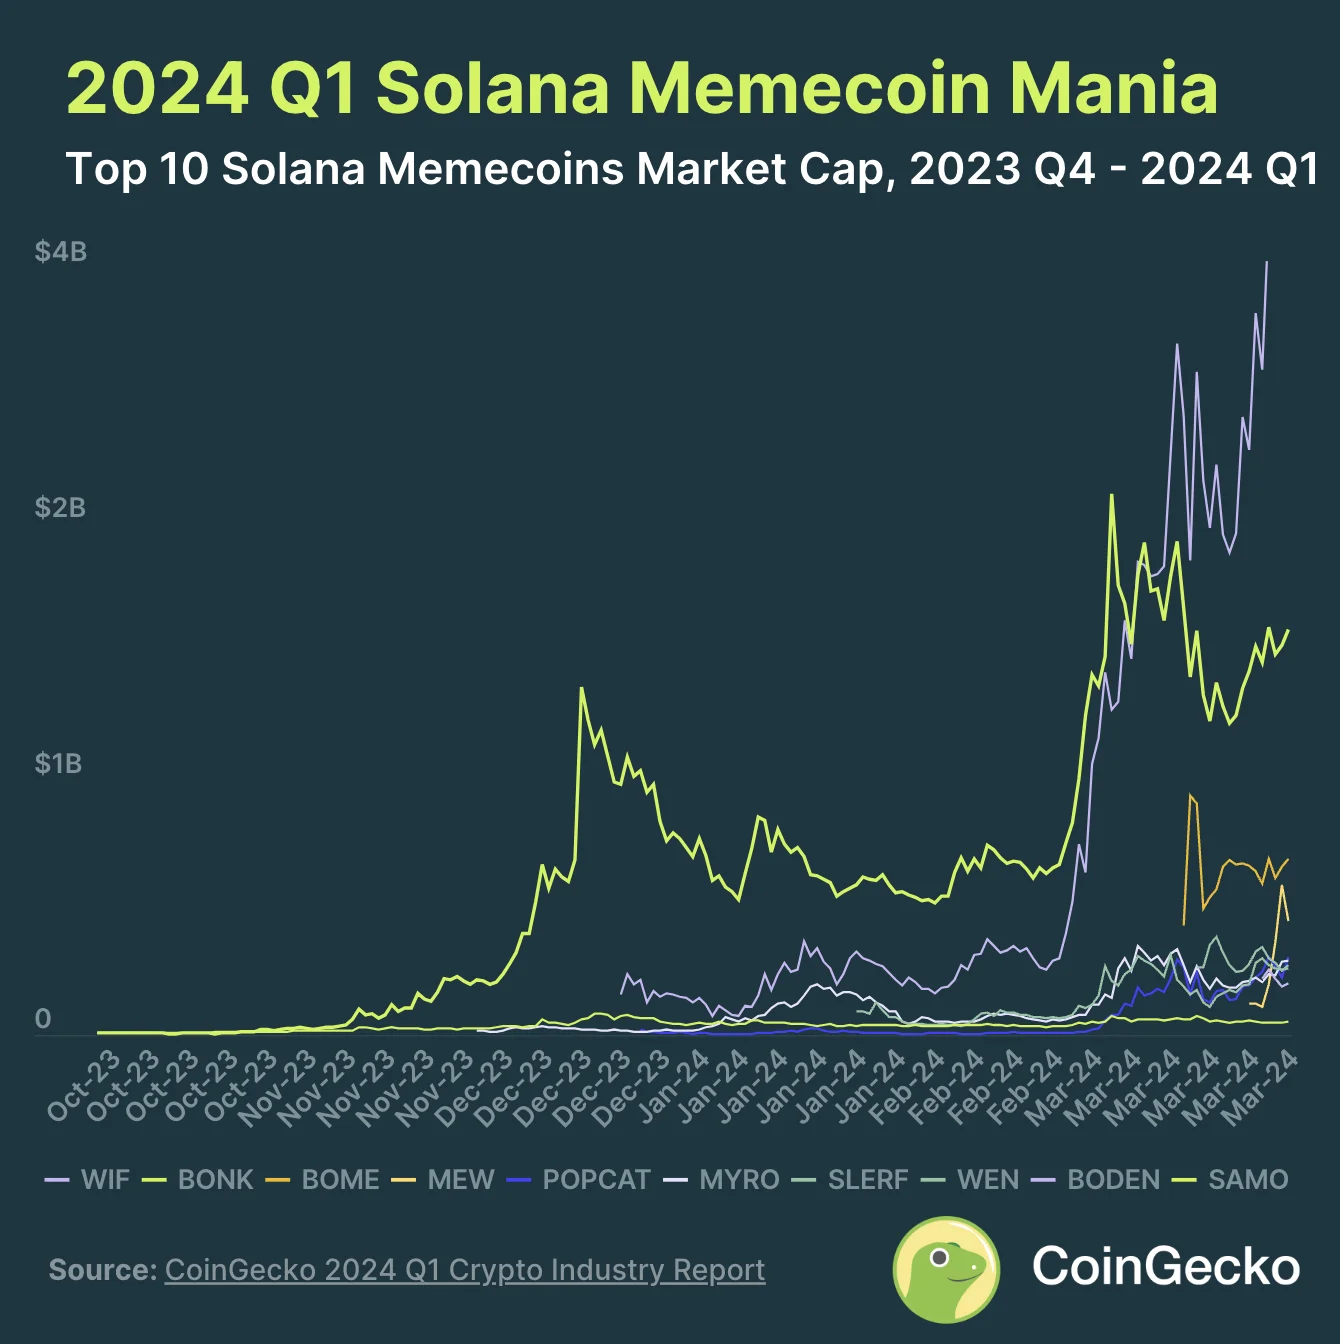 4. Meme kovanci s sedežem v Solani so dosegli tržno kapitalizacijo 8.32 milijarde USD